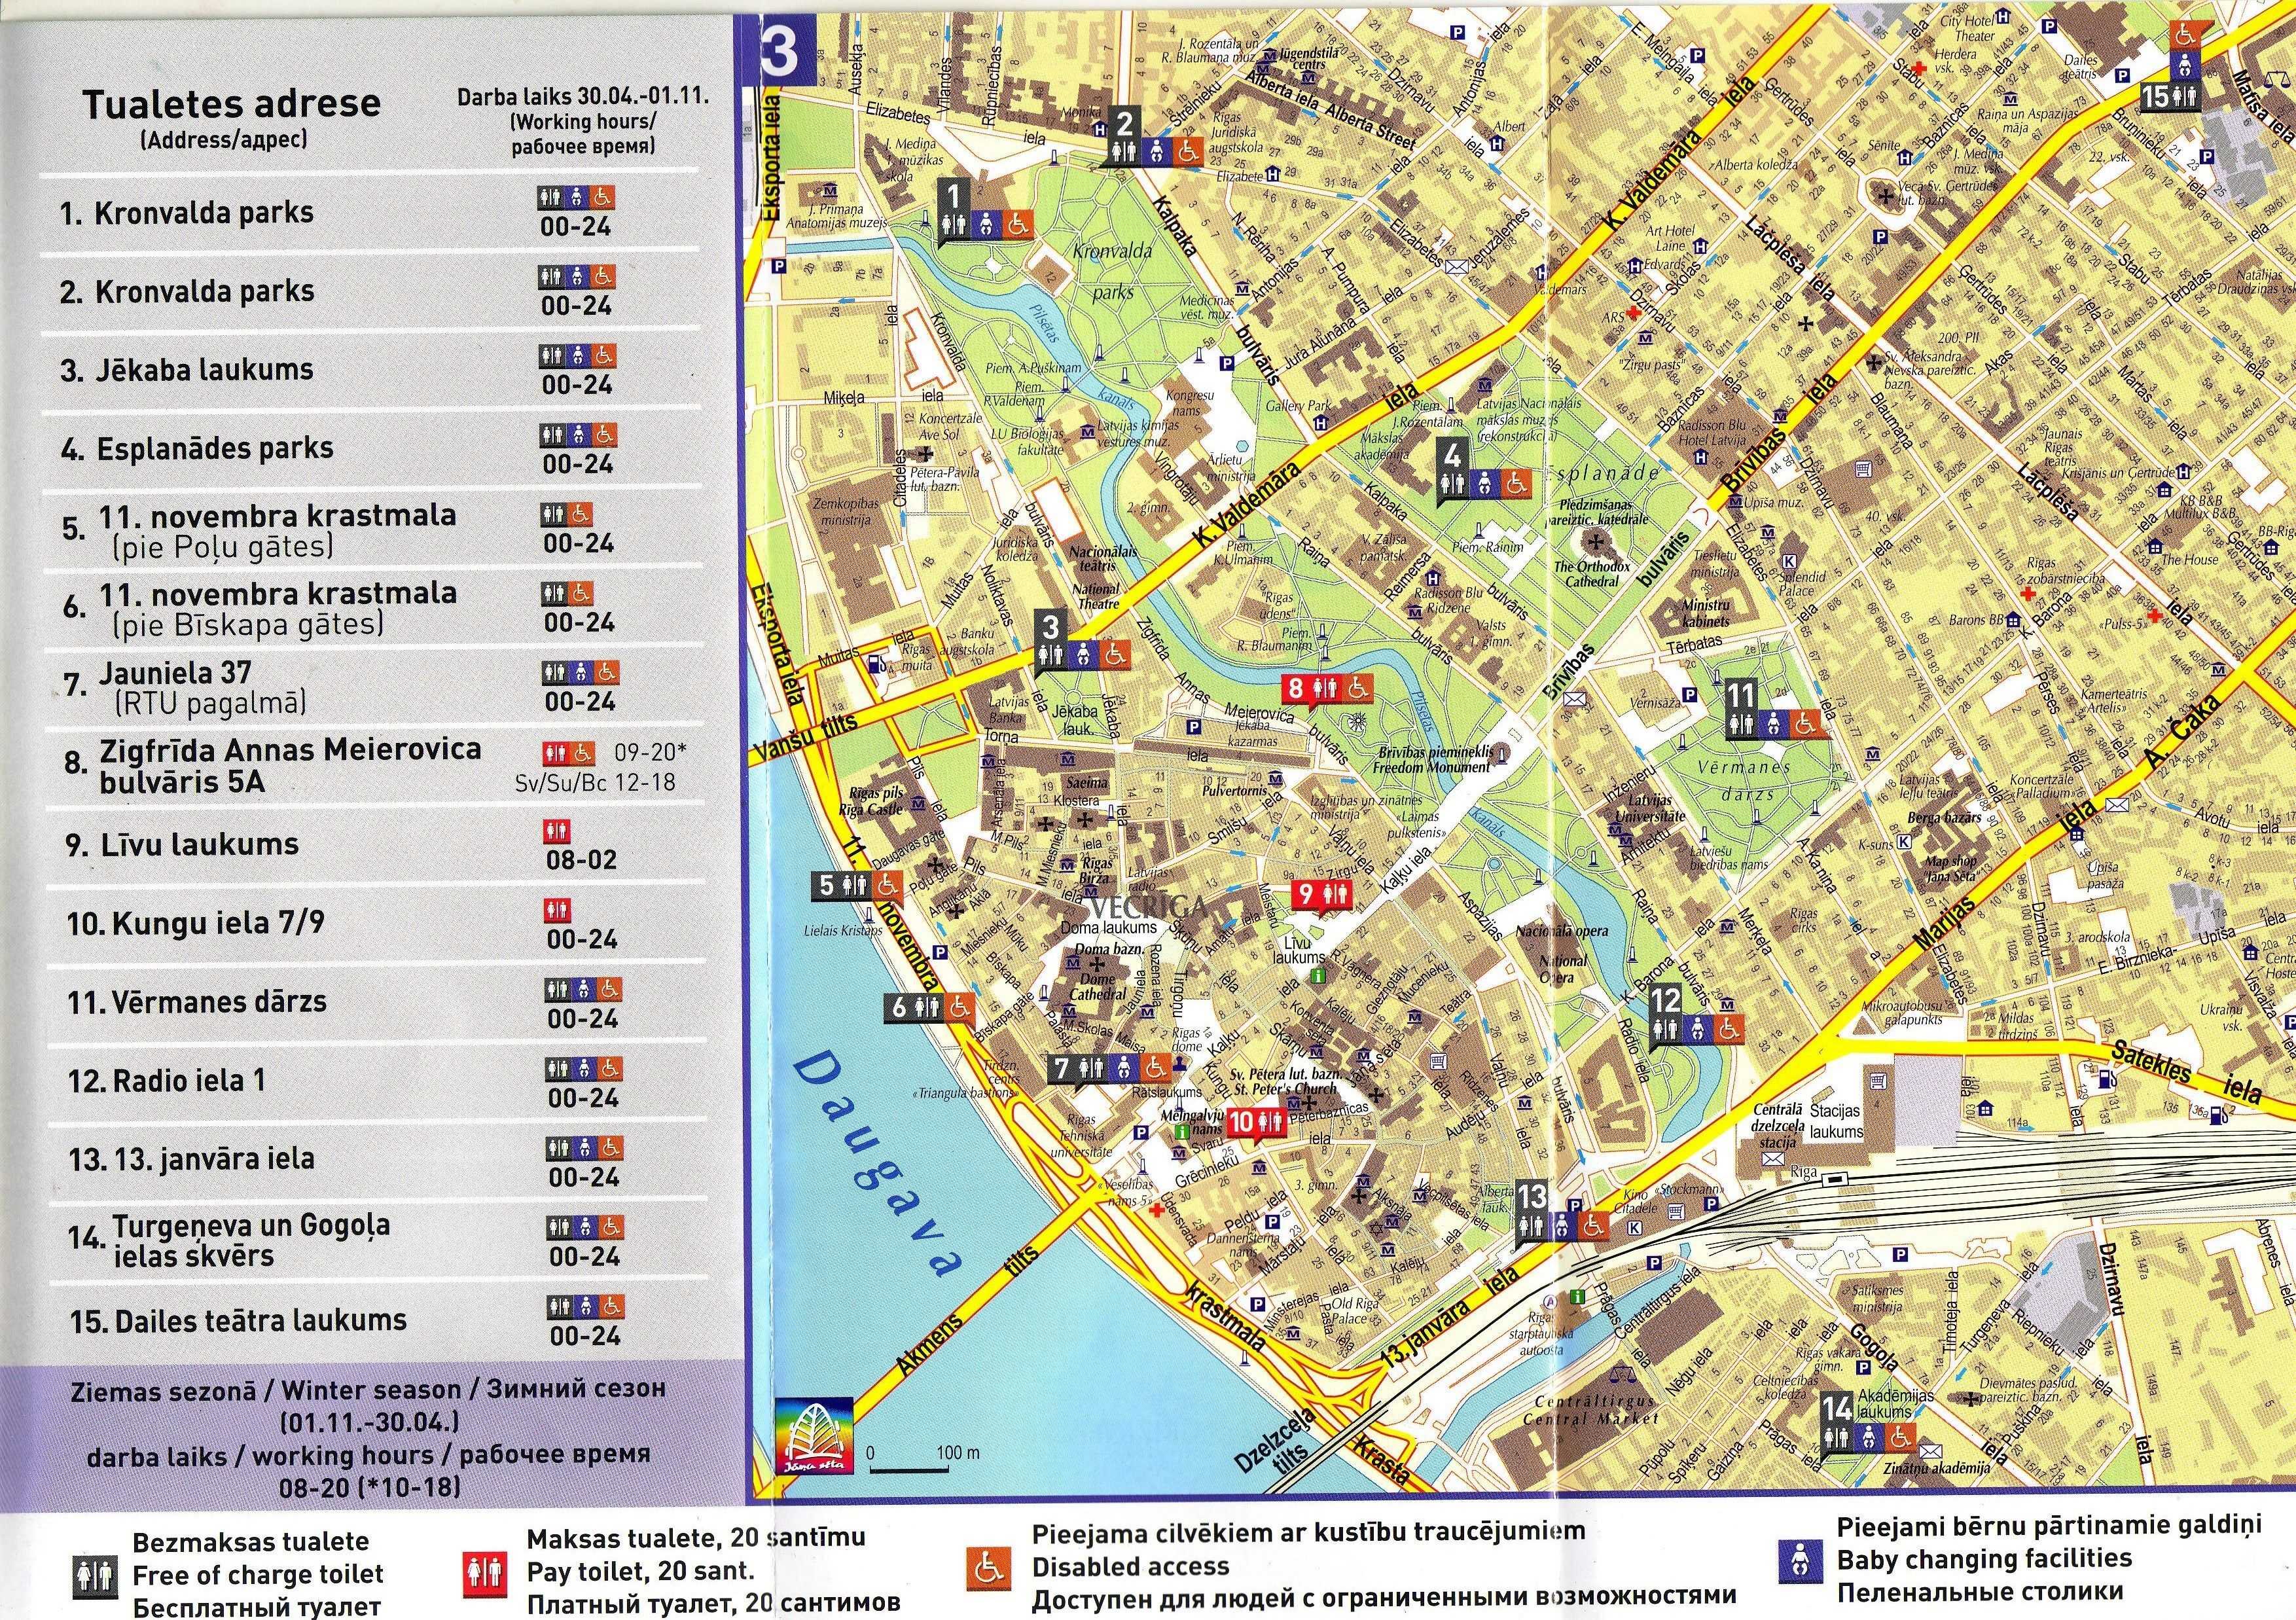 Шоппинг в риге - магазины и торговые центры на карте риги - туристер.ру